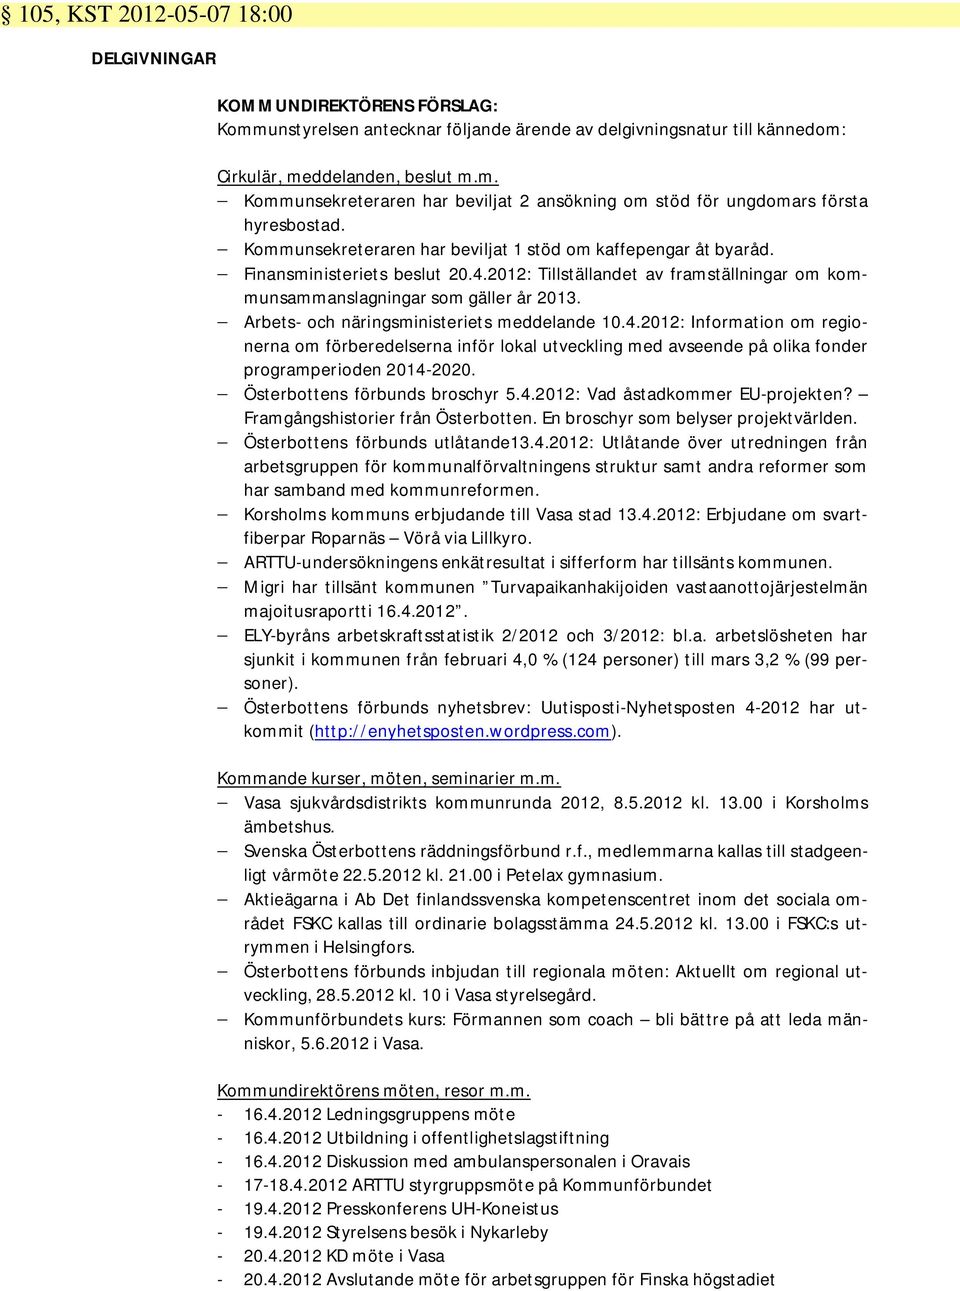 Arbets- och näringsministeriets meddelande 10.4.2012: Information om regionerna om förberedelserna inför lokal utveckling med avseende på olika fonder programperioden 2014-2020.